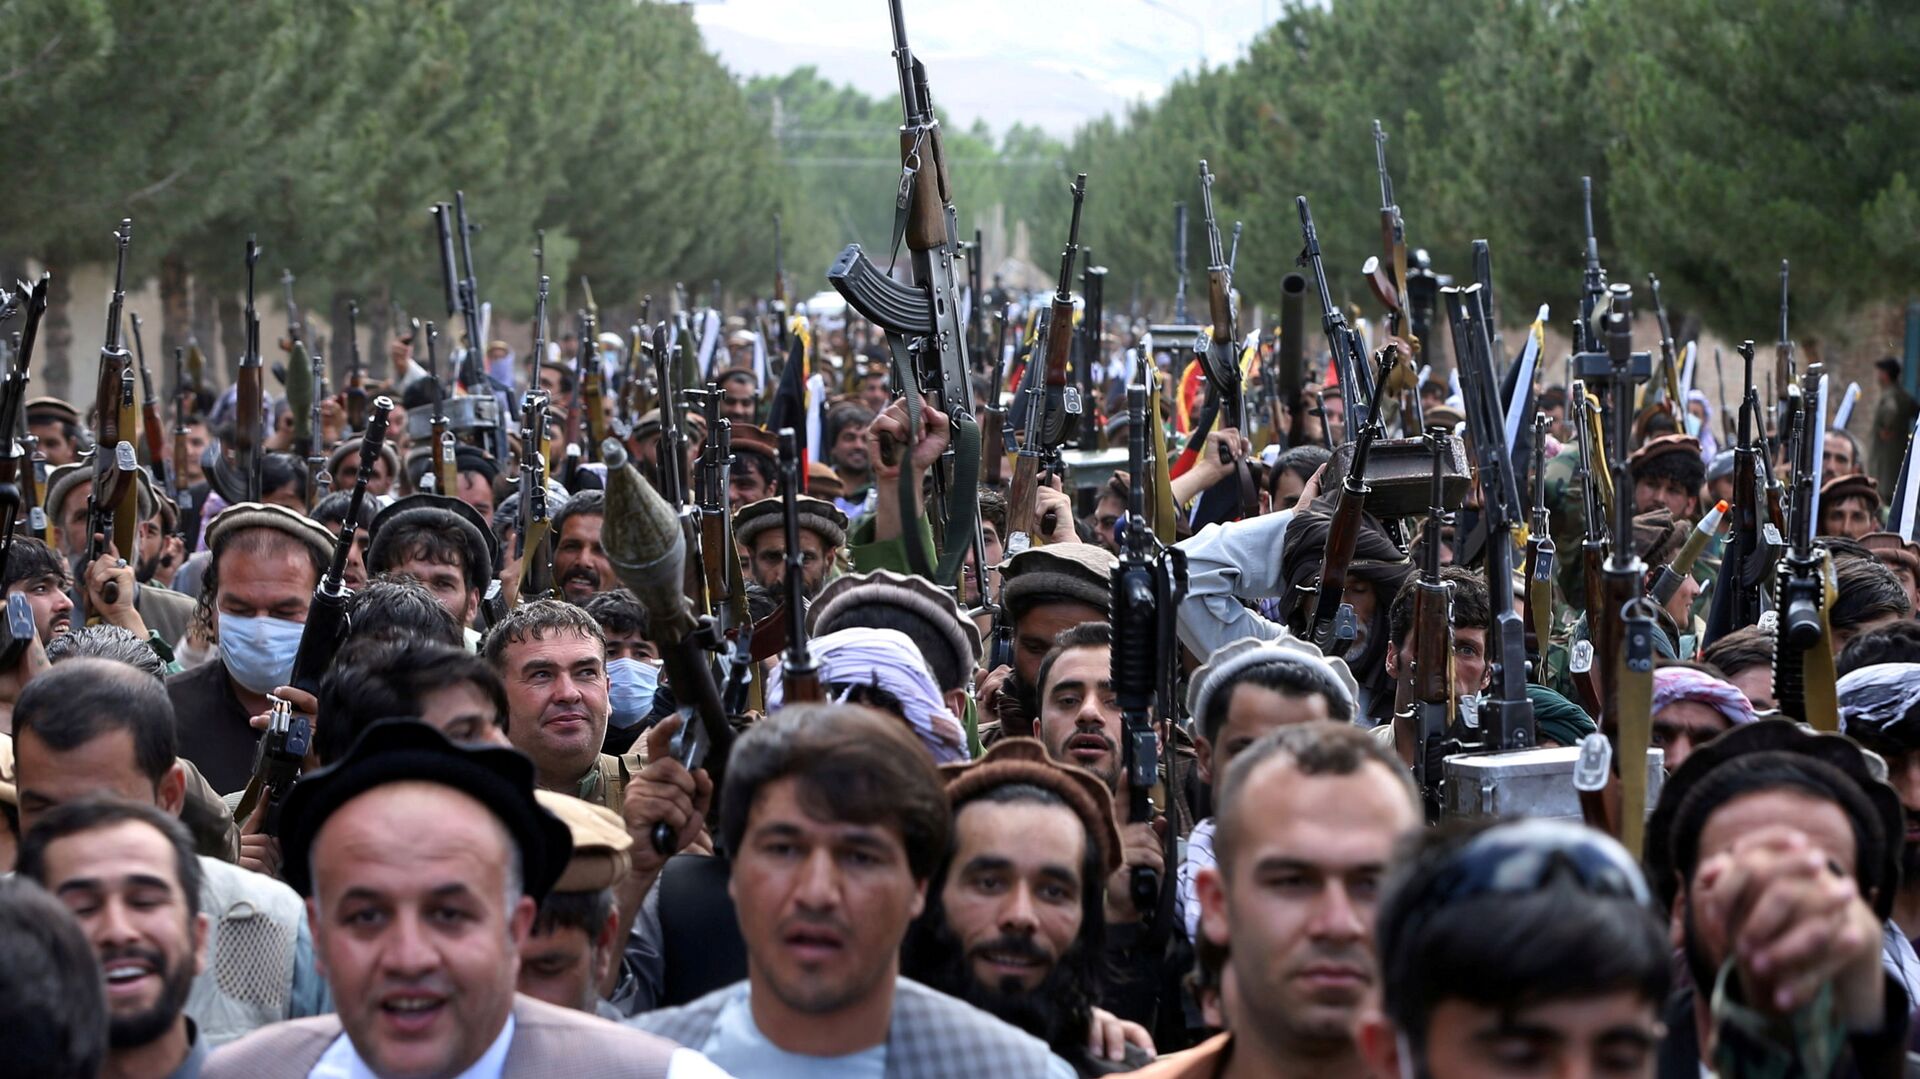 Наоружани људи током скупа у Кабулу - Sputnik Србија, 1920, 09.07.2021